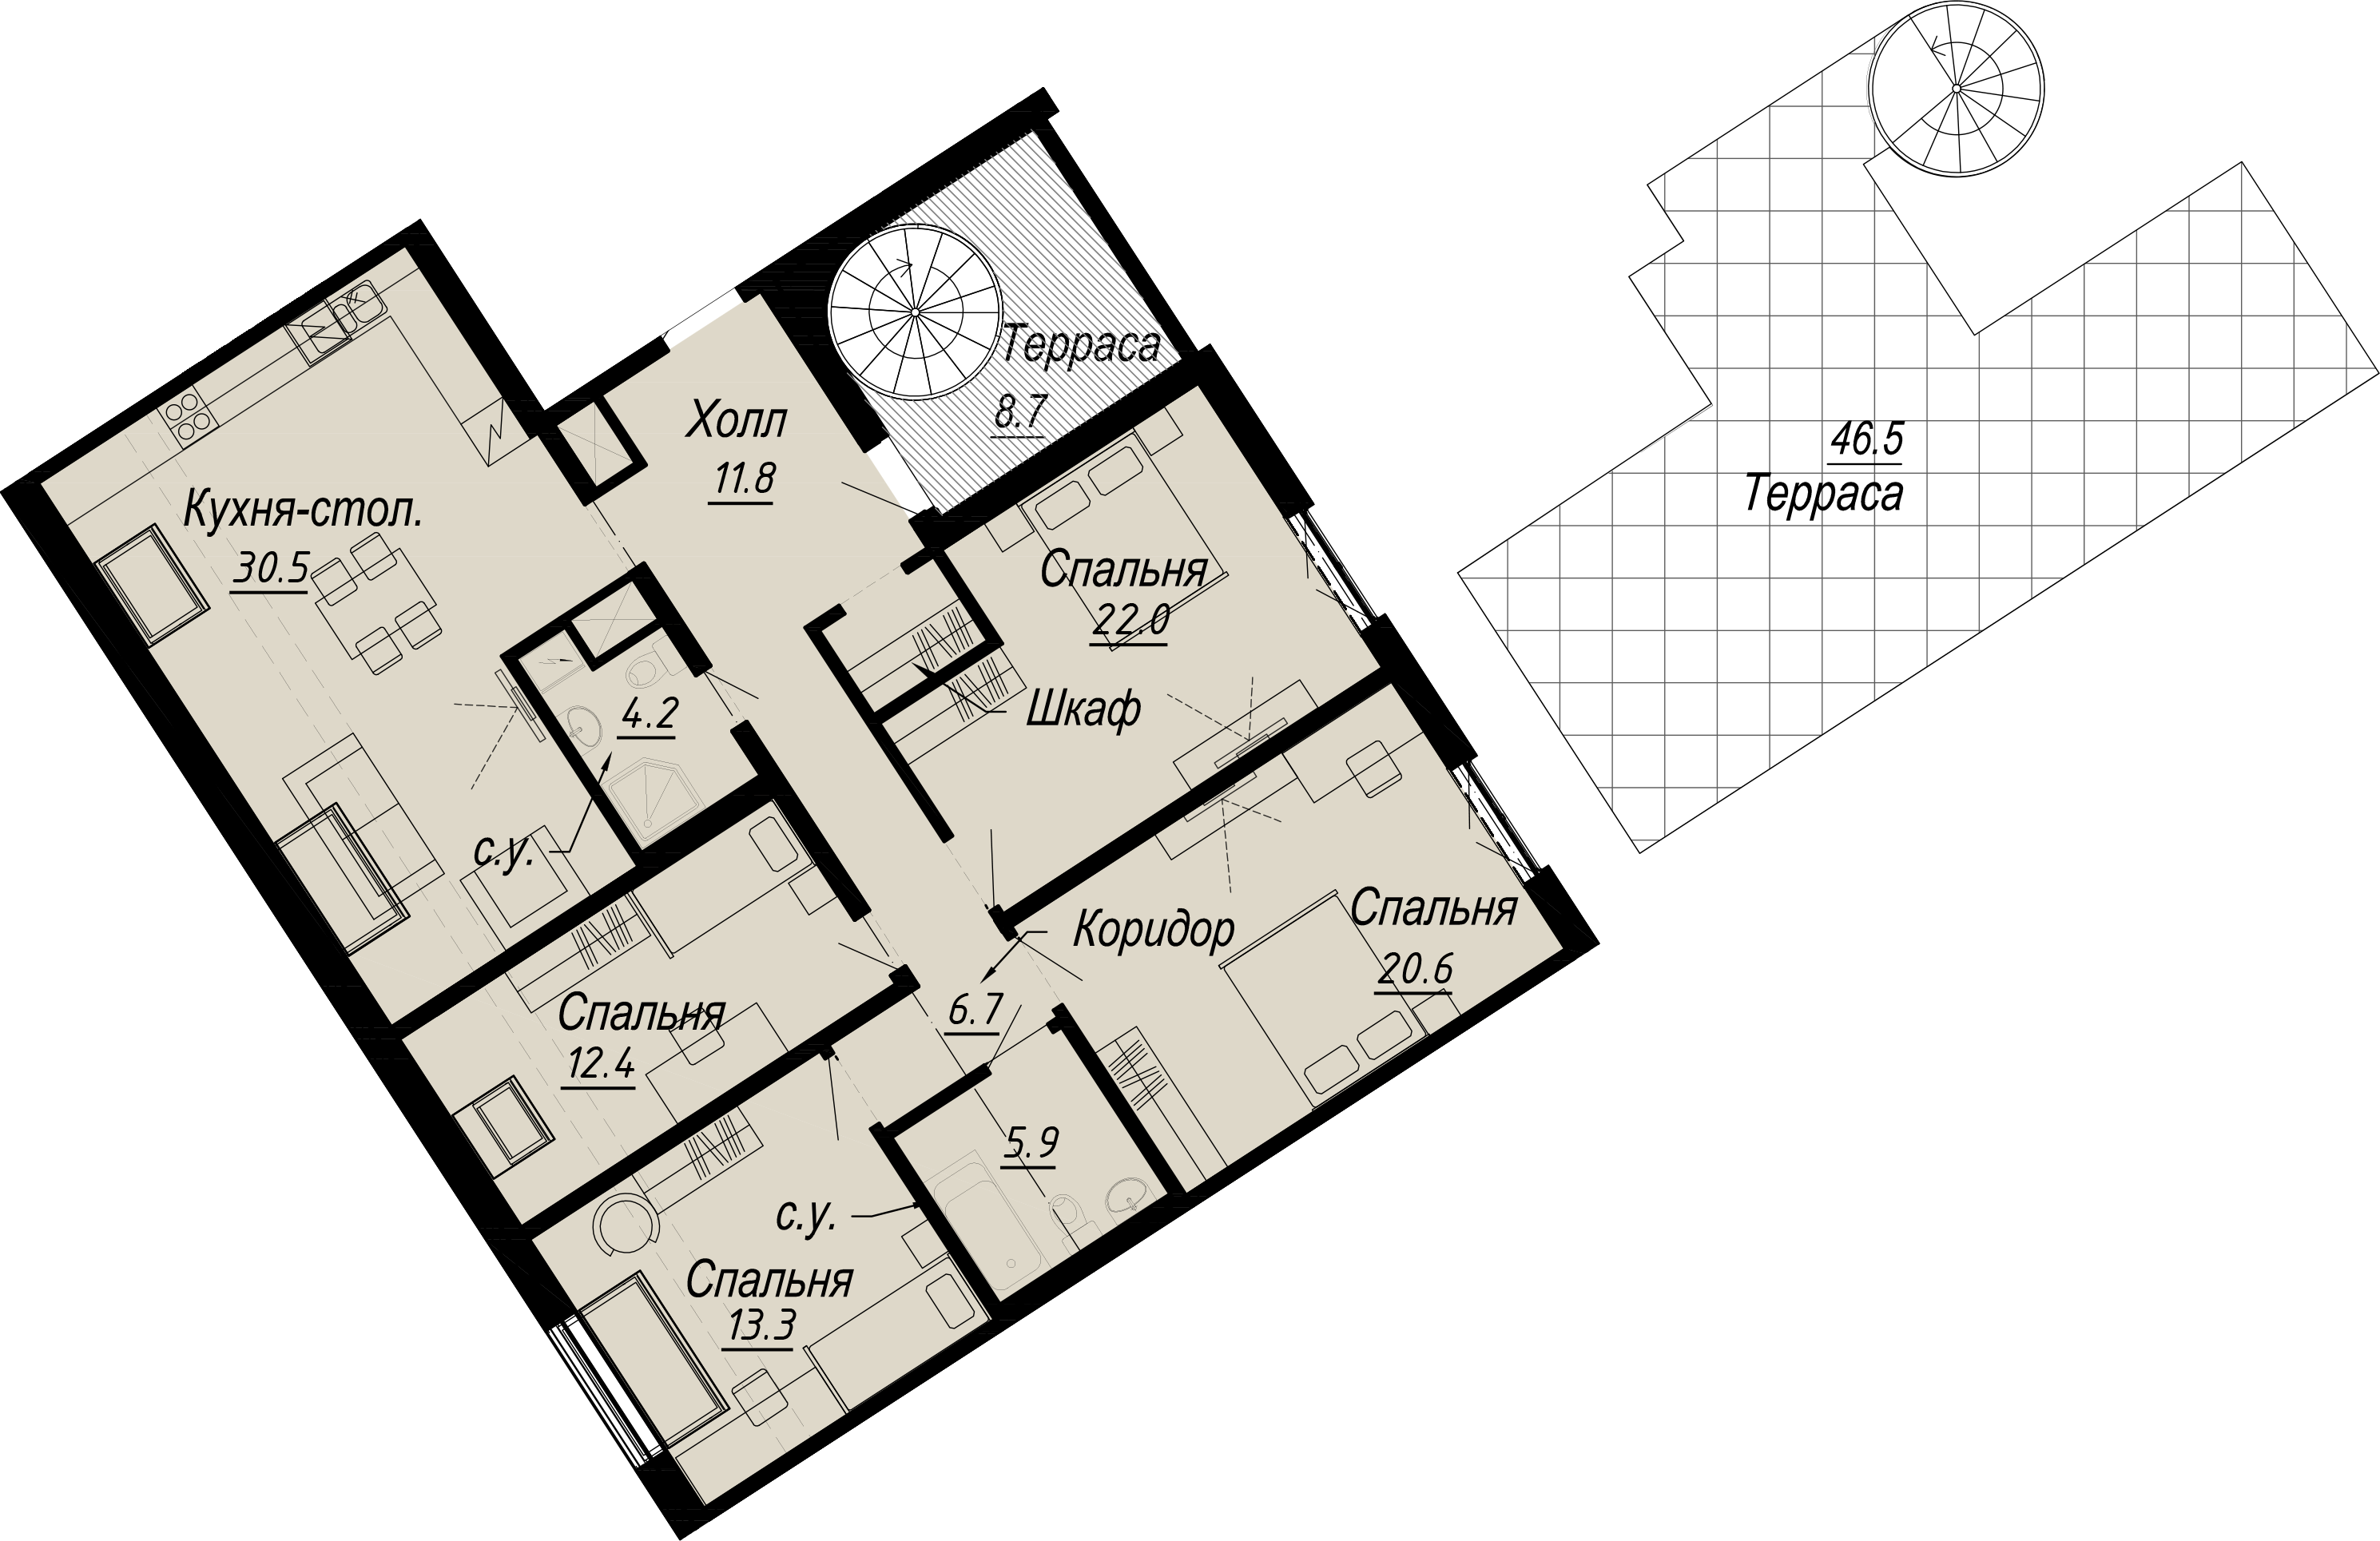 4-комнатная квартира  №2-8 в Meltzer Hall: 149.38 м², этаж 8 - купить в Санкт-Петербурге